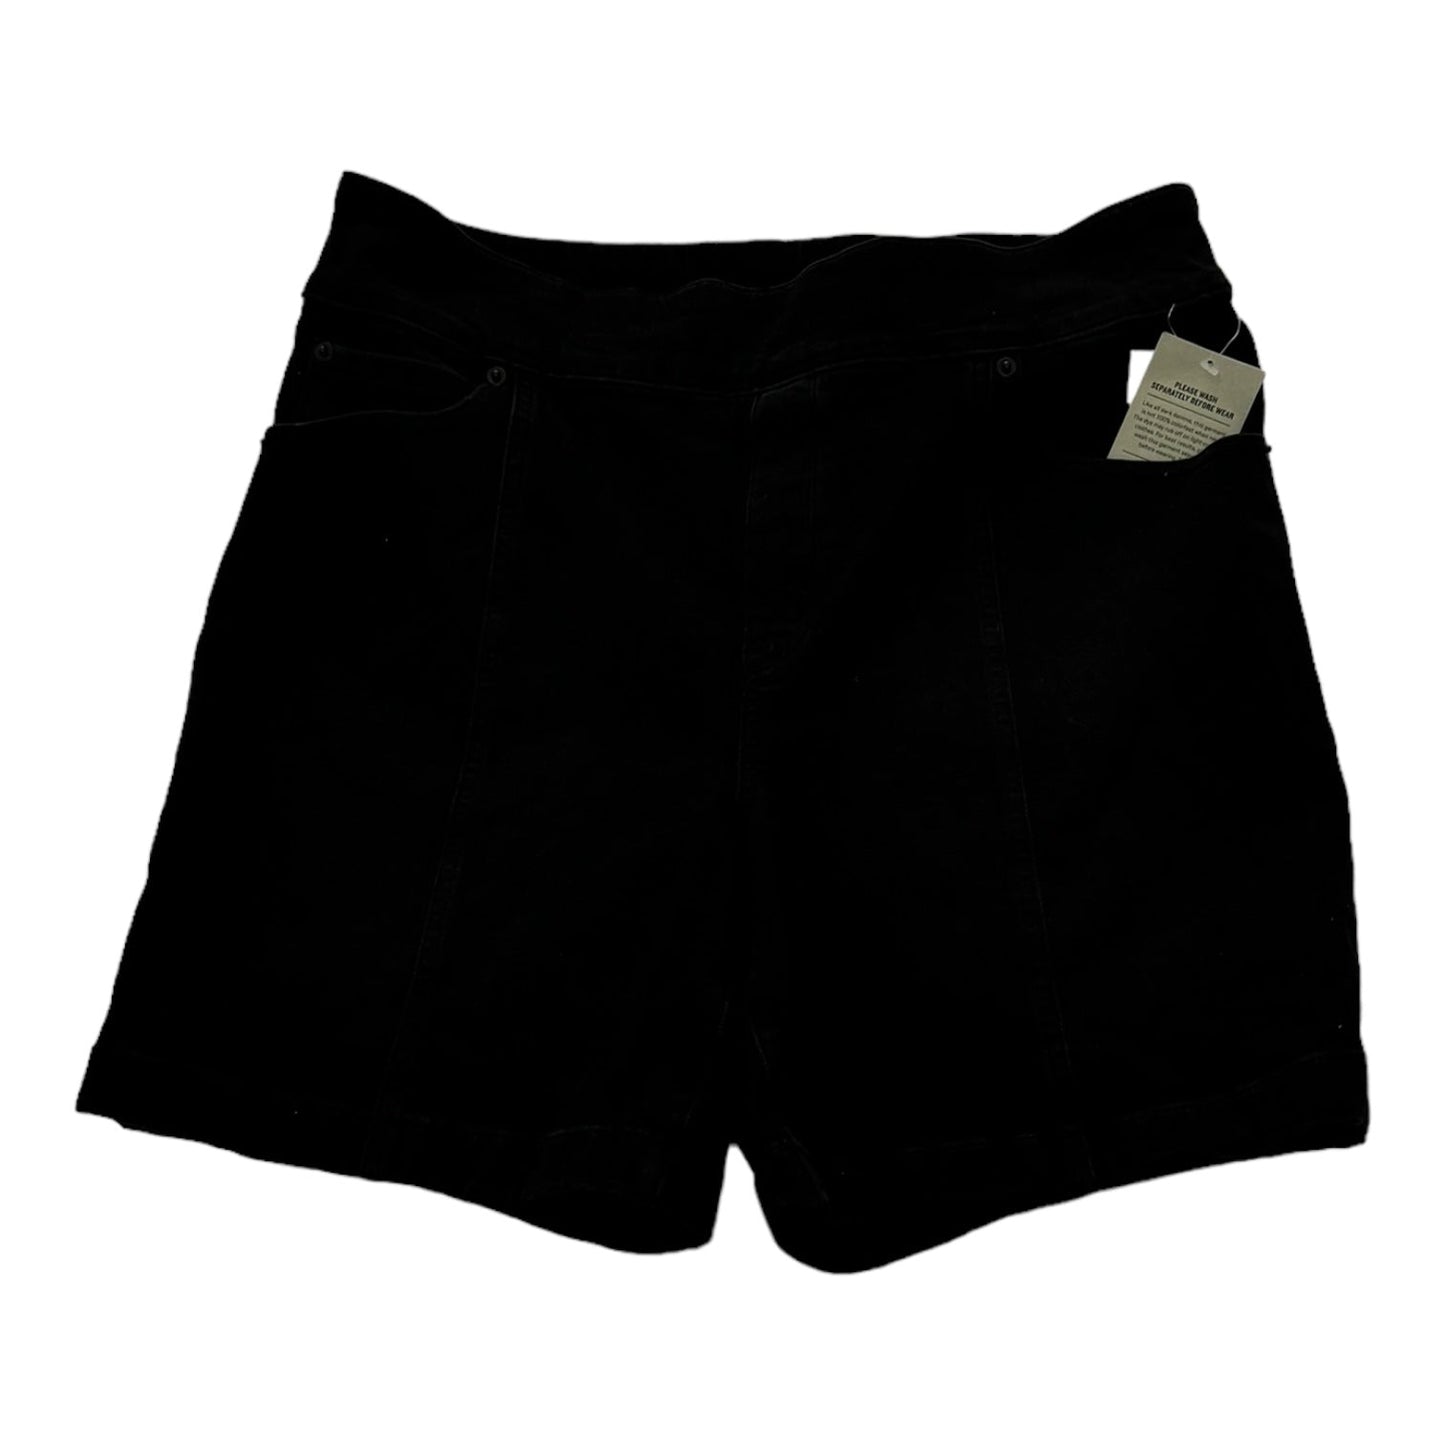 Black Shorts Duluth Trading, Size 14